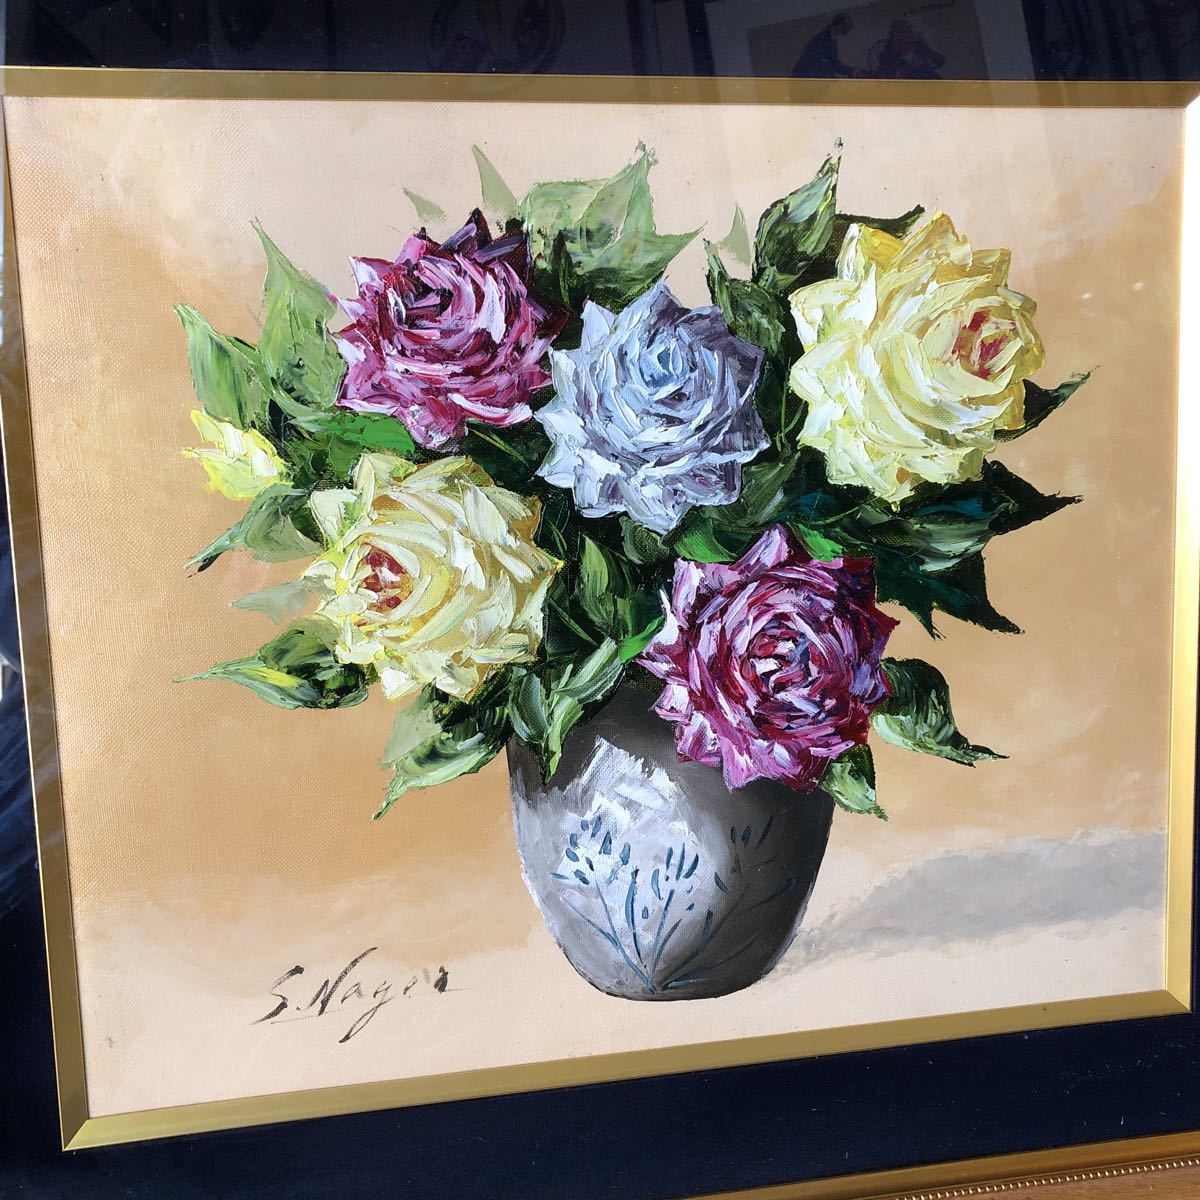 तोशियो नागाओ द्वारा तेल चित्रकला गुलाब चित्रकला अज्ञात तिथि उन लोगों के लिए जो फूलों से प्यार करते हैं, चित्रकारी, तैल चित्र, प्रकृति, परिदृश्य चित्रकला